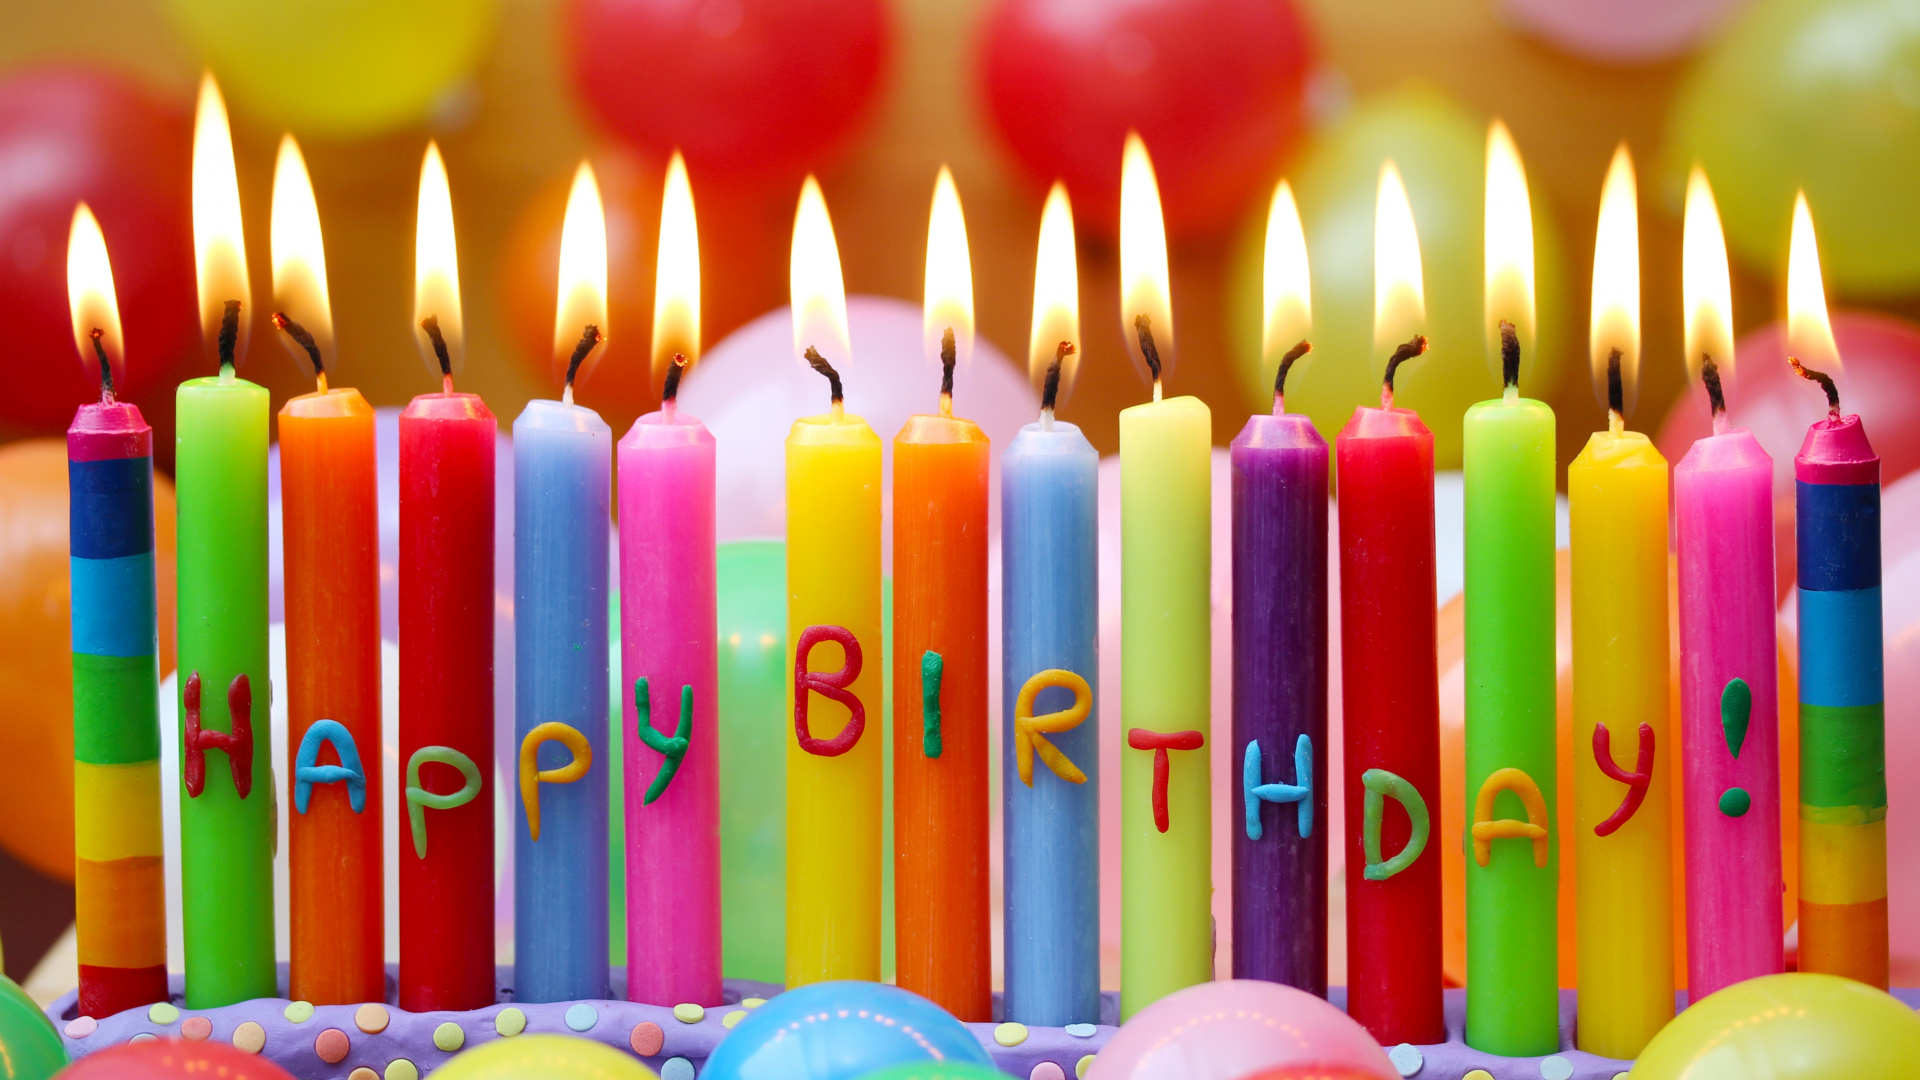 生日快乐, 生日, 缔约方, 生日蛋糕, 缔约方供应 壁纸 1920x1080 允许